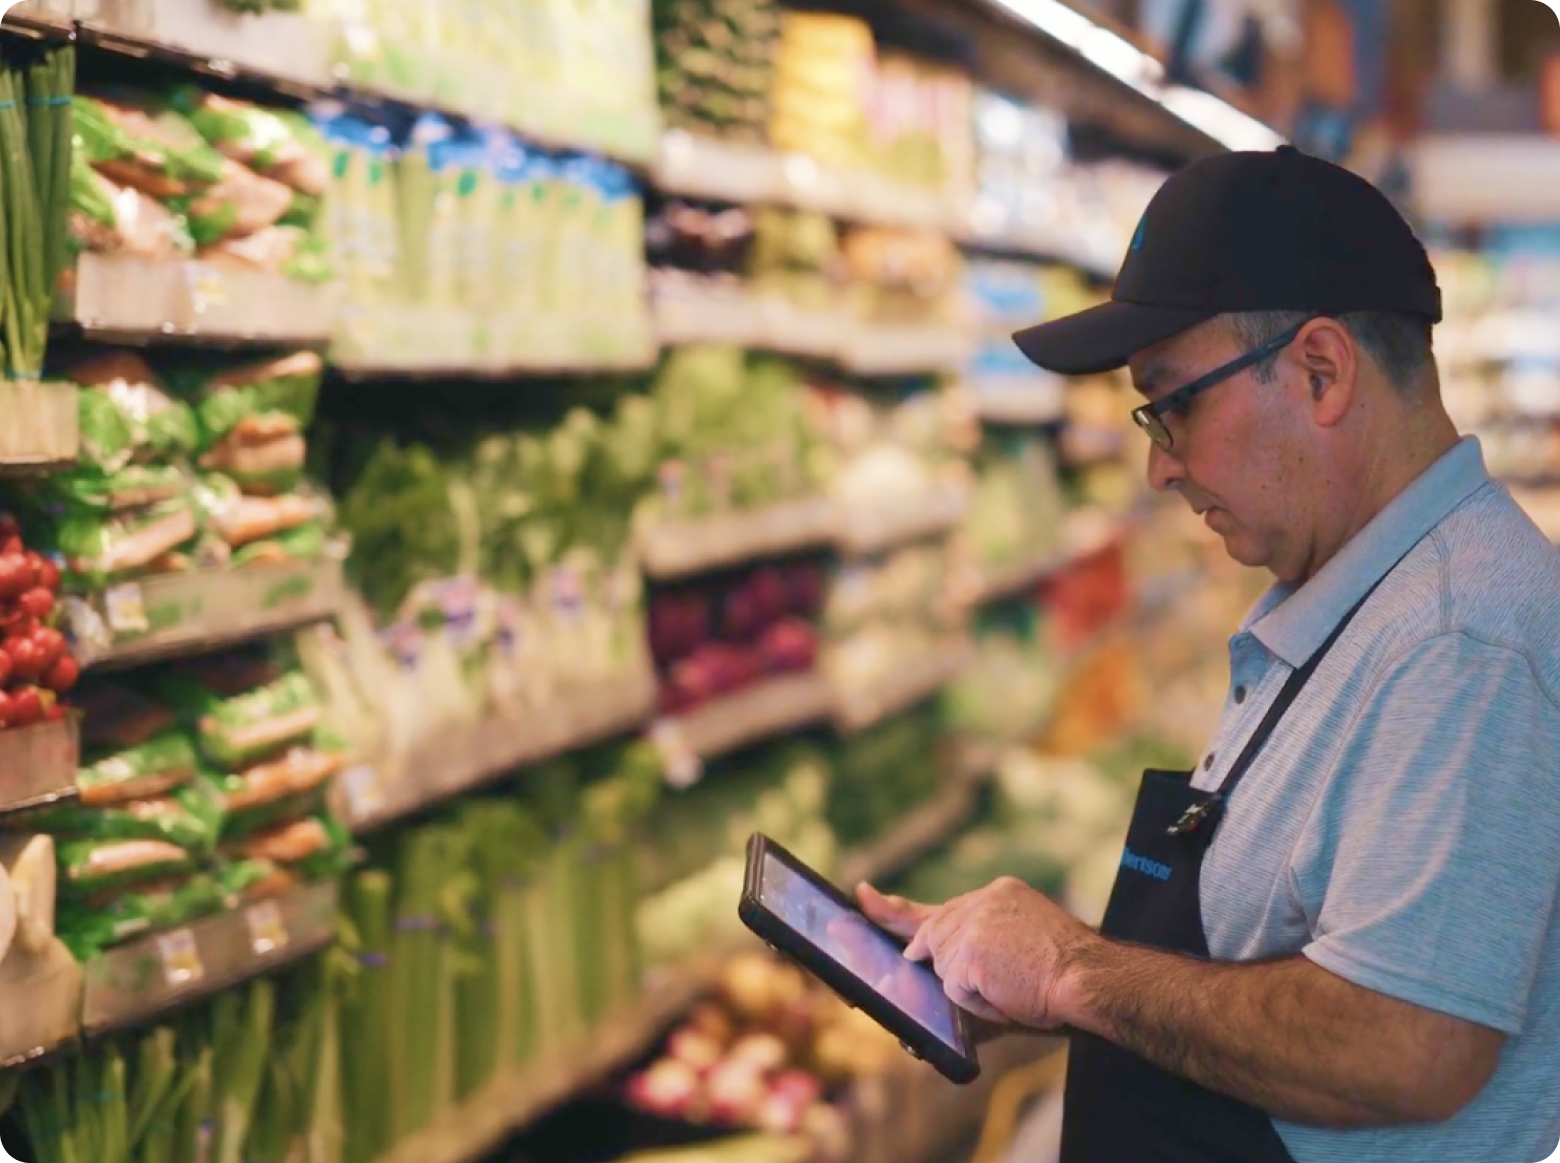 La estadounidense Alfresh trabaja con cadenas de supermercados para gestionar inventarios.